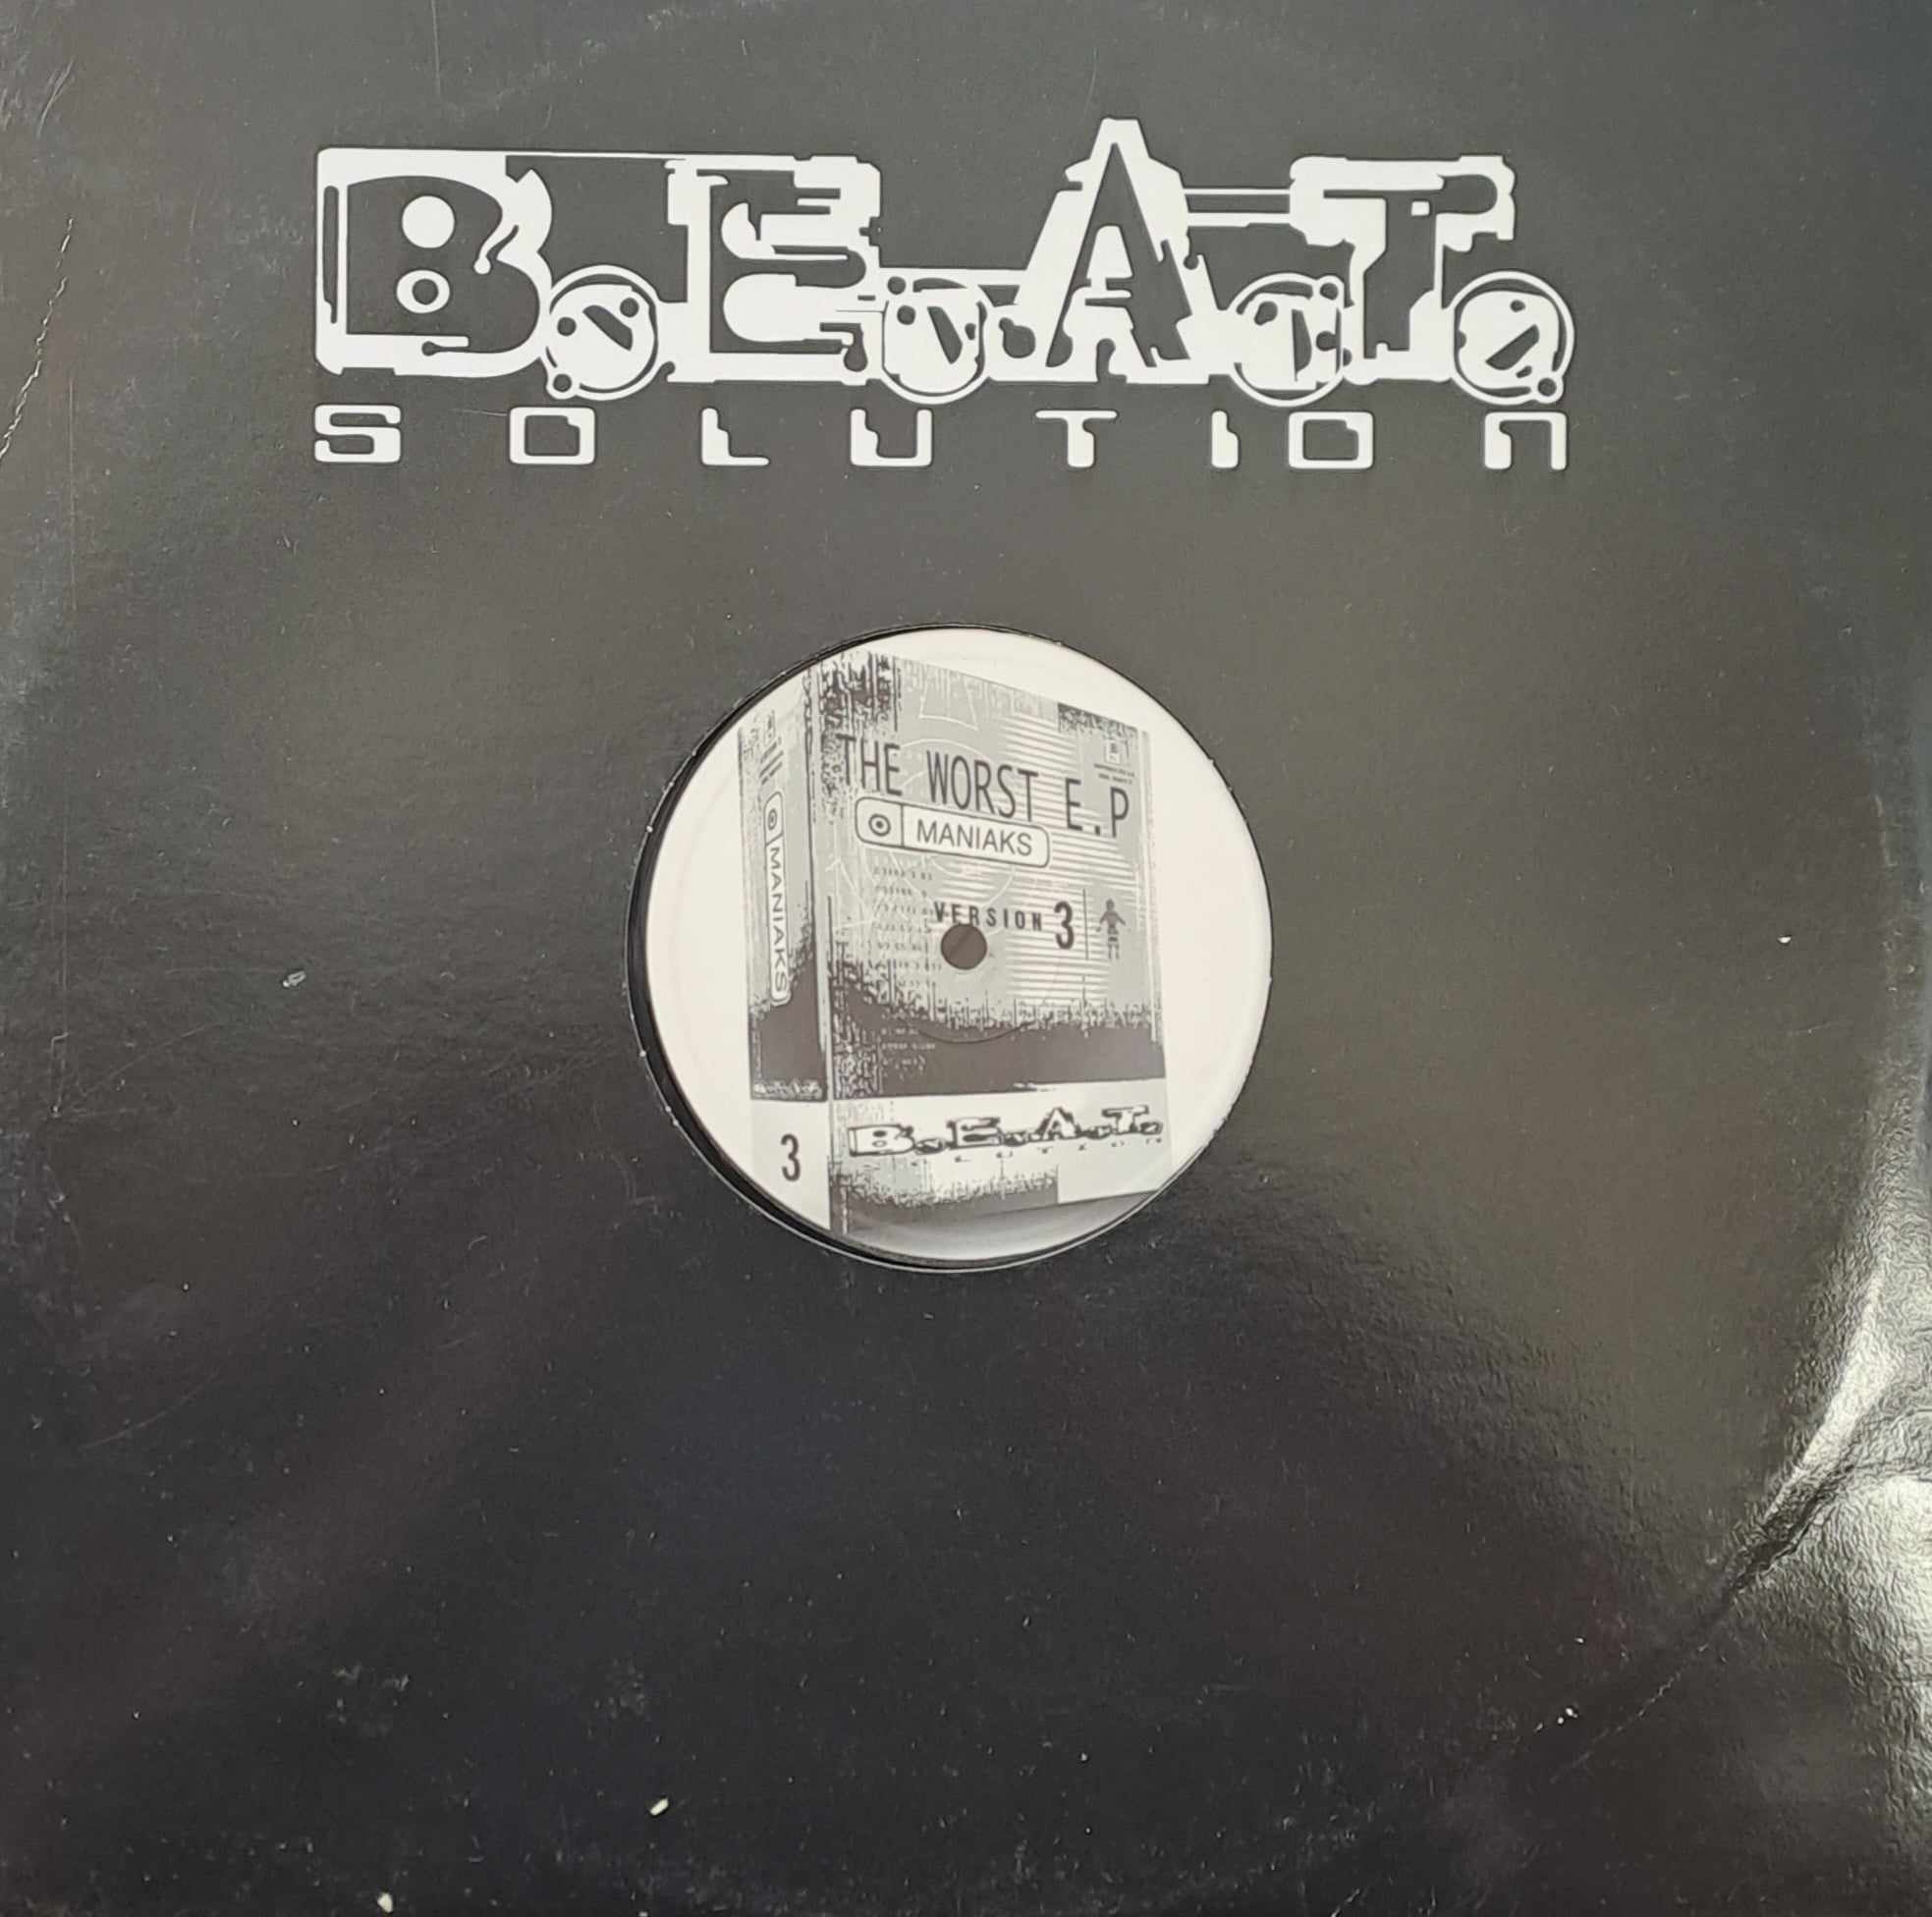 B.E.A.T. Solution 03 - vinyle hardcore